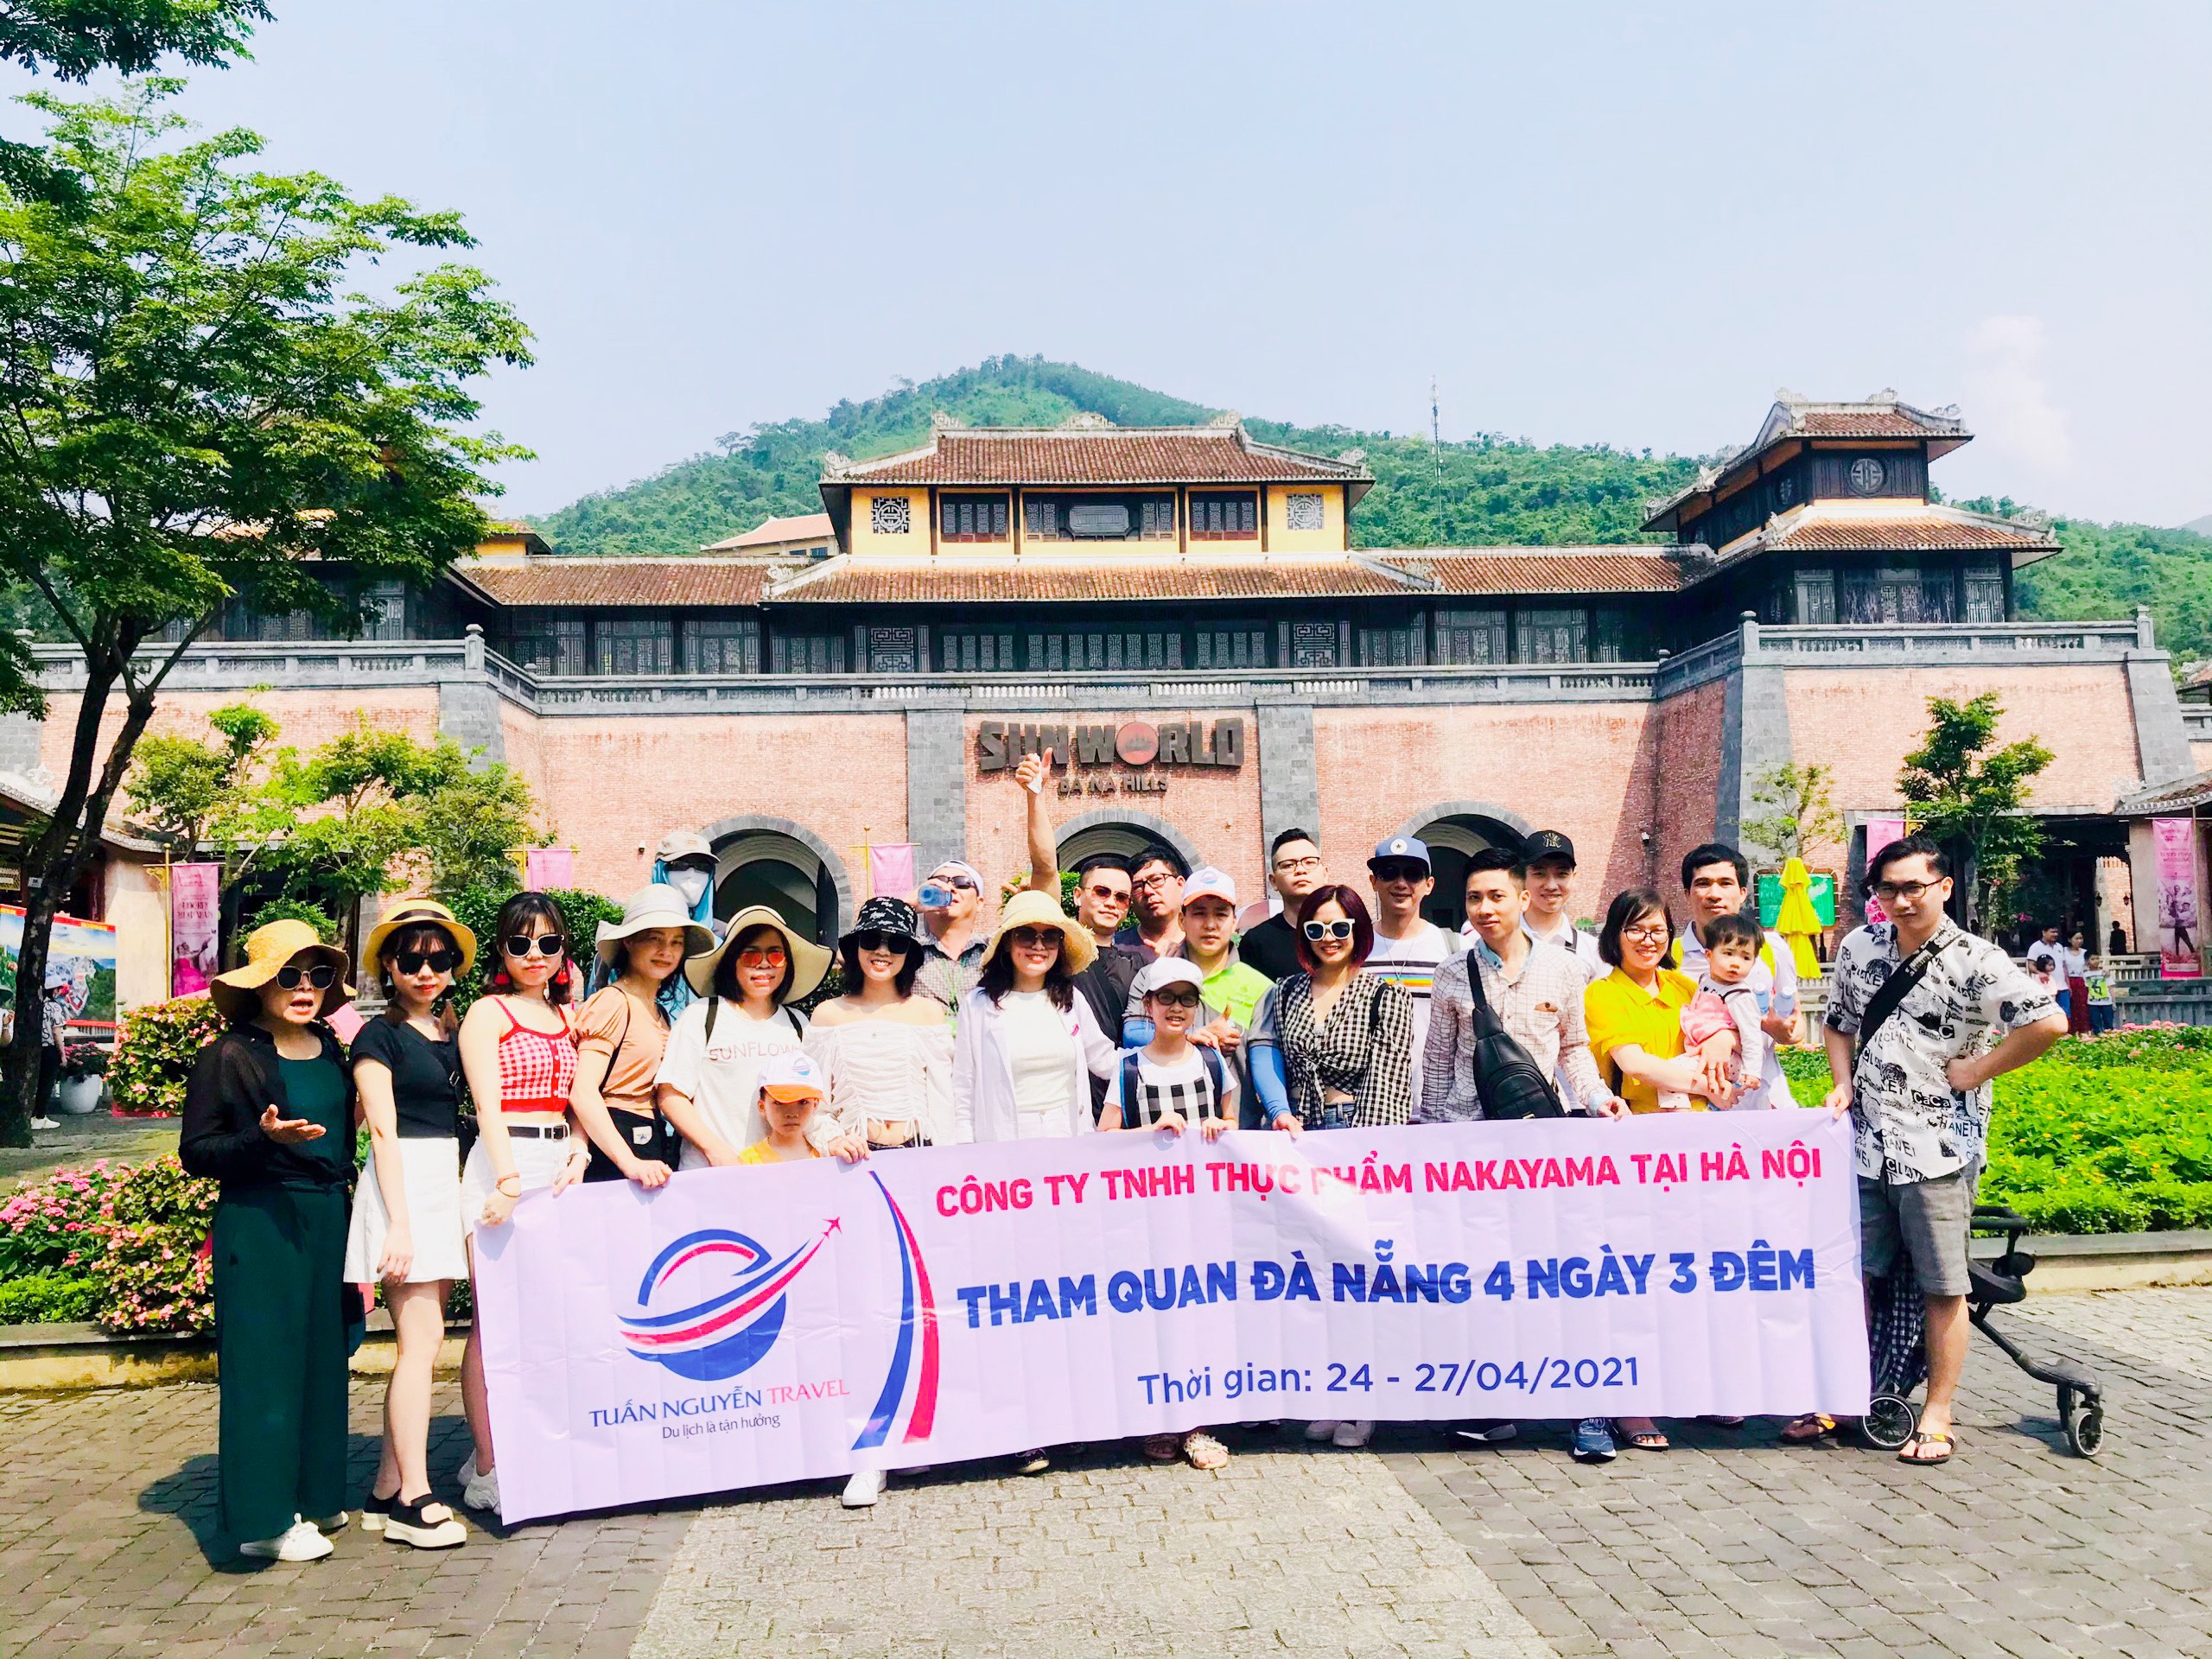 Một chuyến du lịch nhiều kỷ niệm với công ty Tuấn Nguyễn Travel